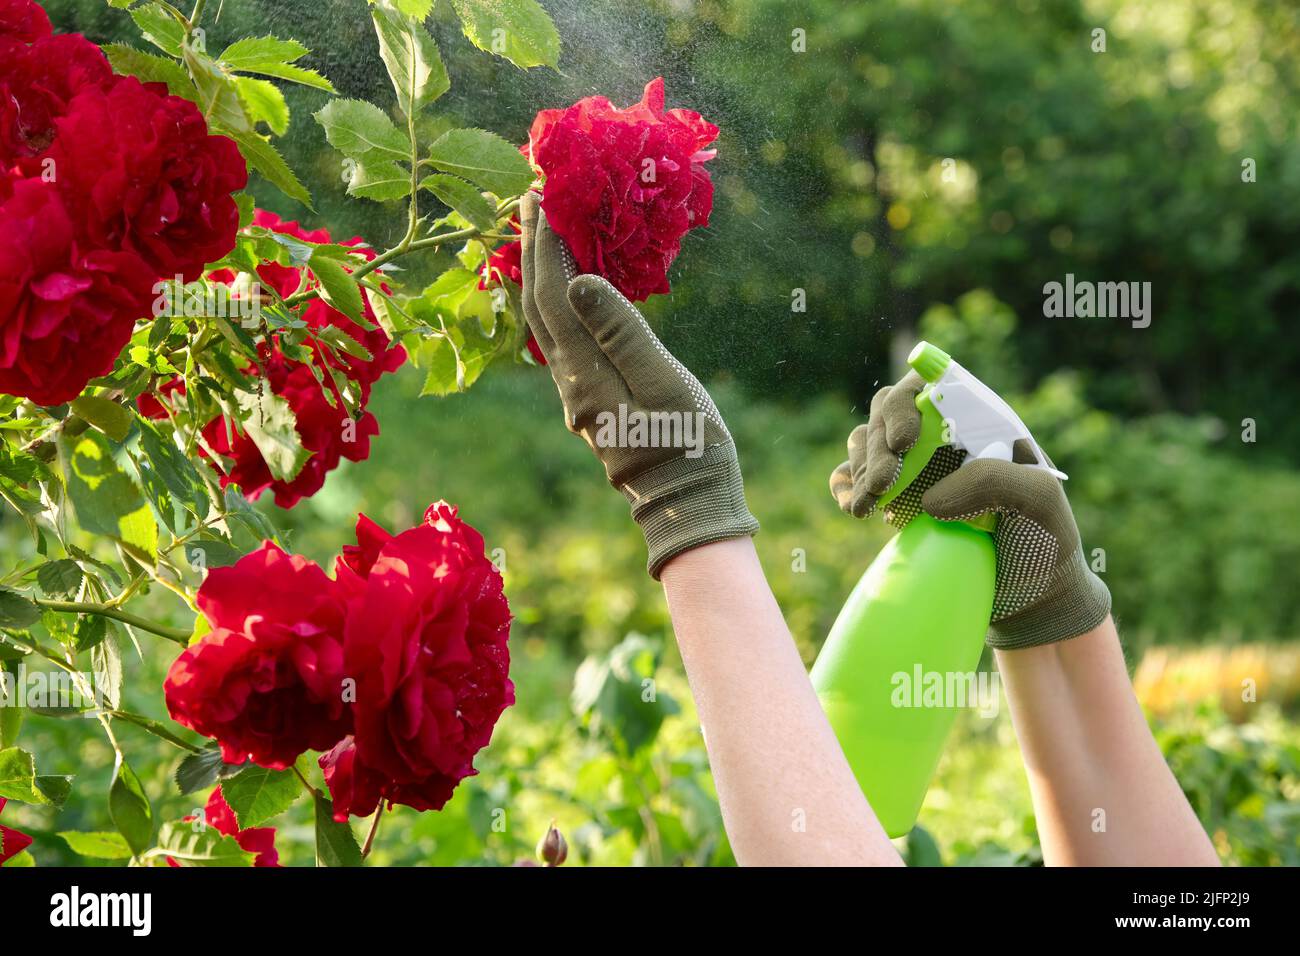 Jardinero rociando rosas usando una botella de aerosol en un jardín. Tratamiento de las plantas de rosas afectadas por una botella de aerosol. Cuidado de las plantas de jardín. Foto de stock